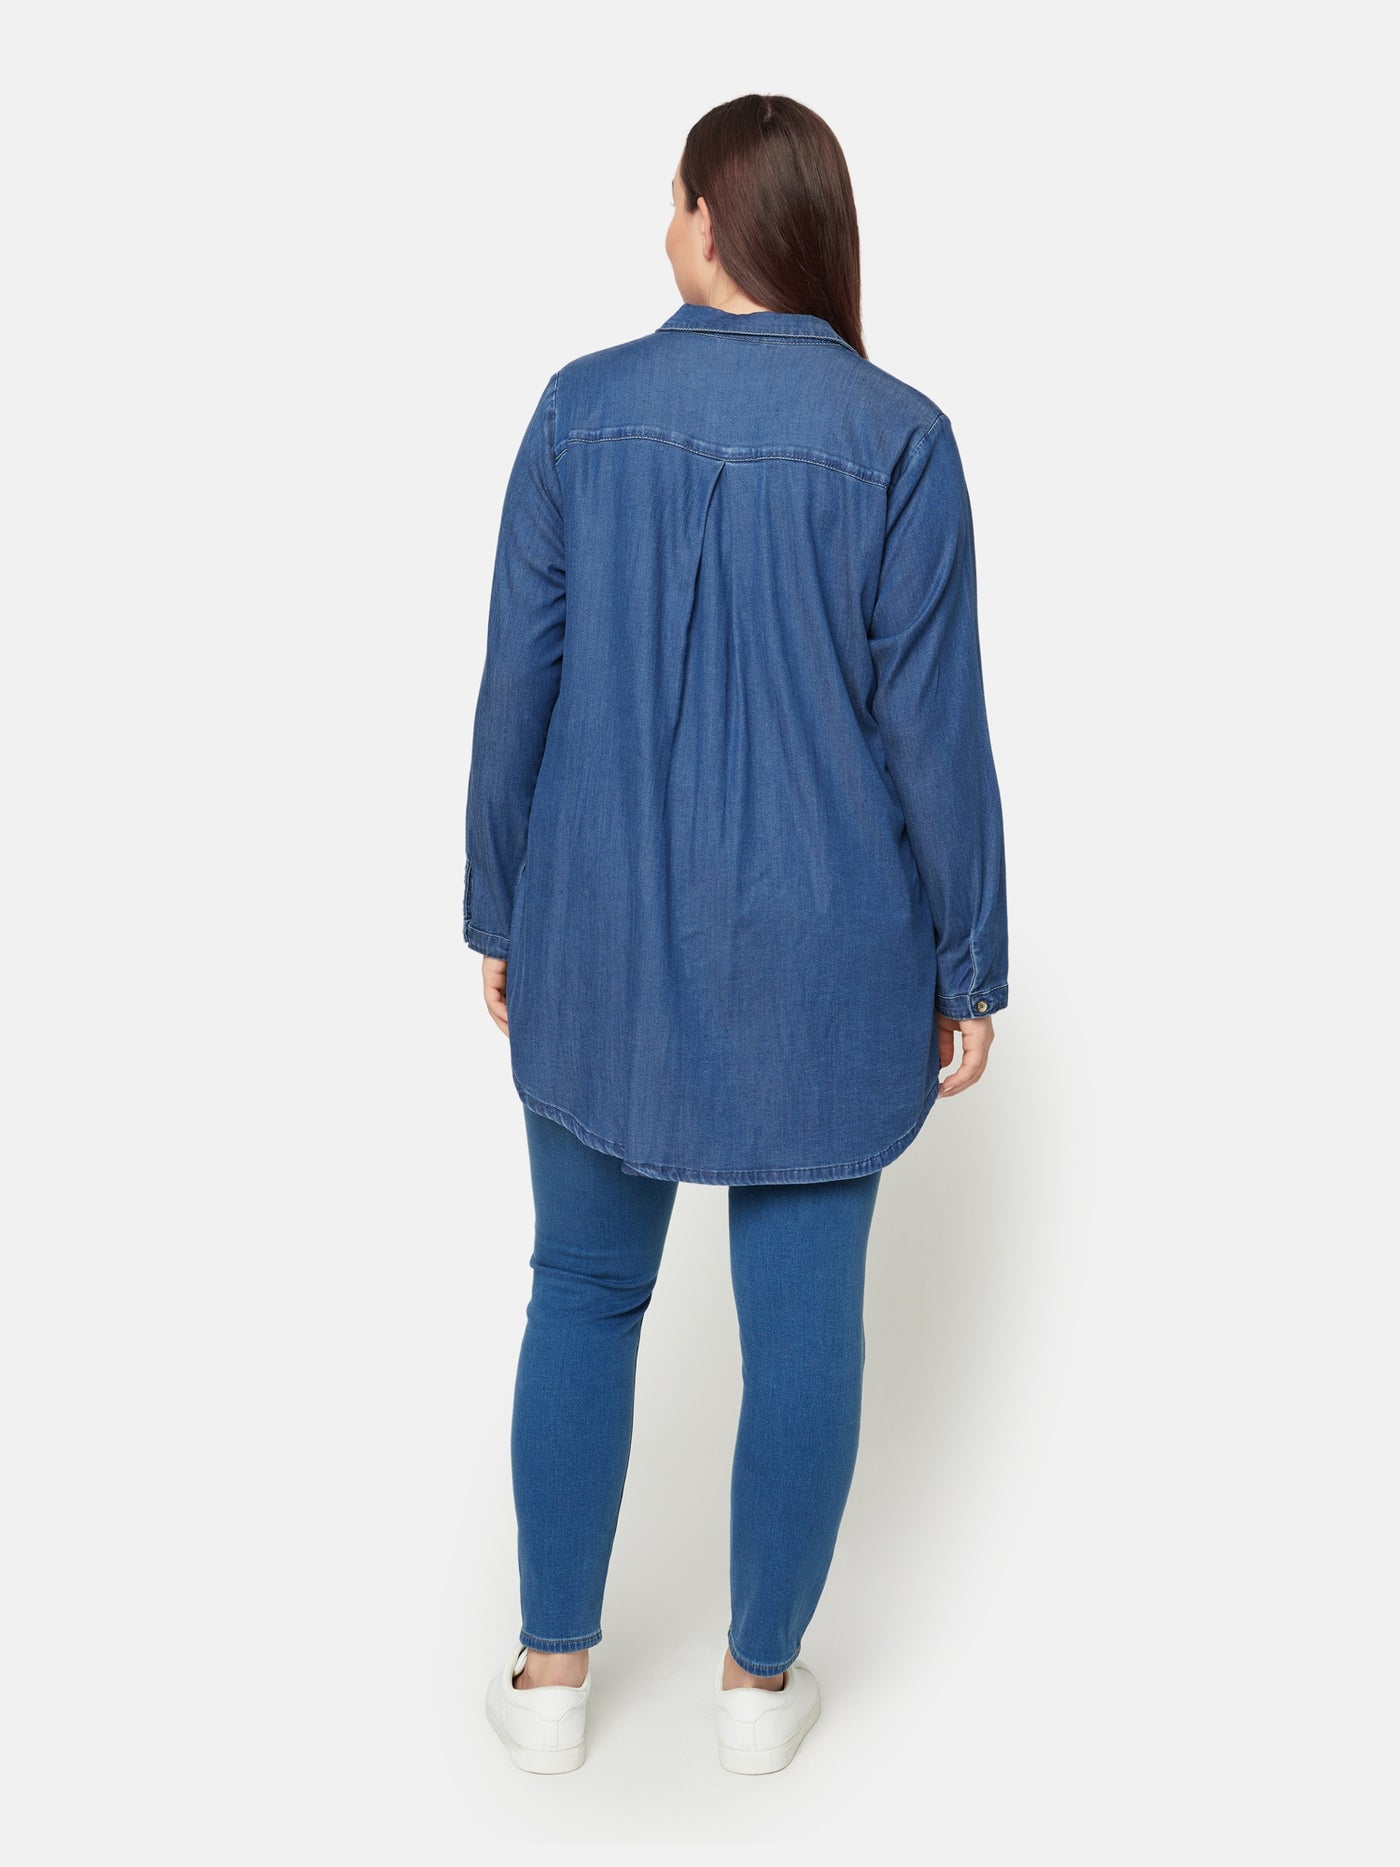 Skjorte - Medium Blue Denim